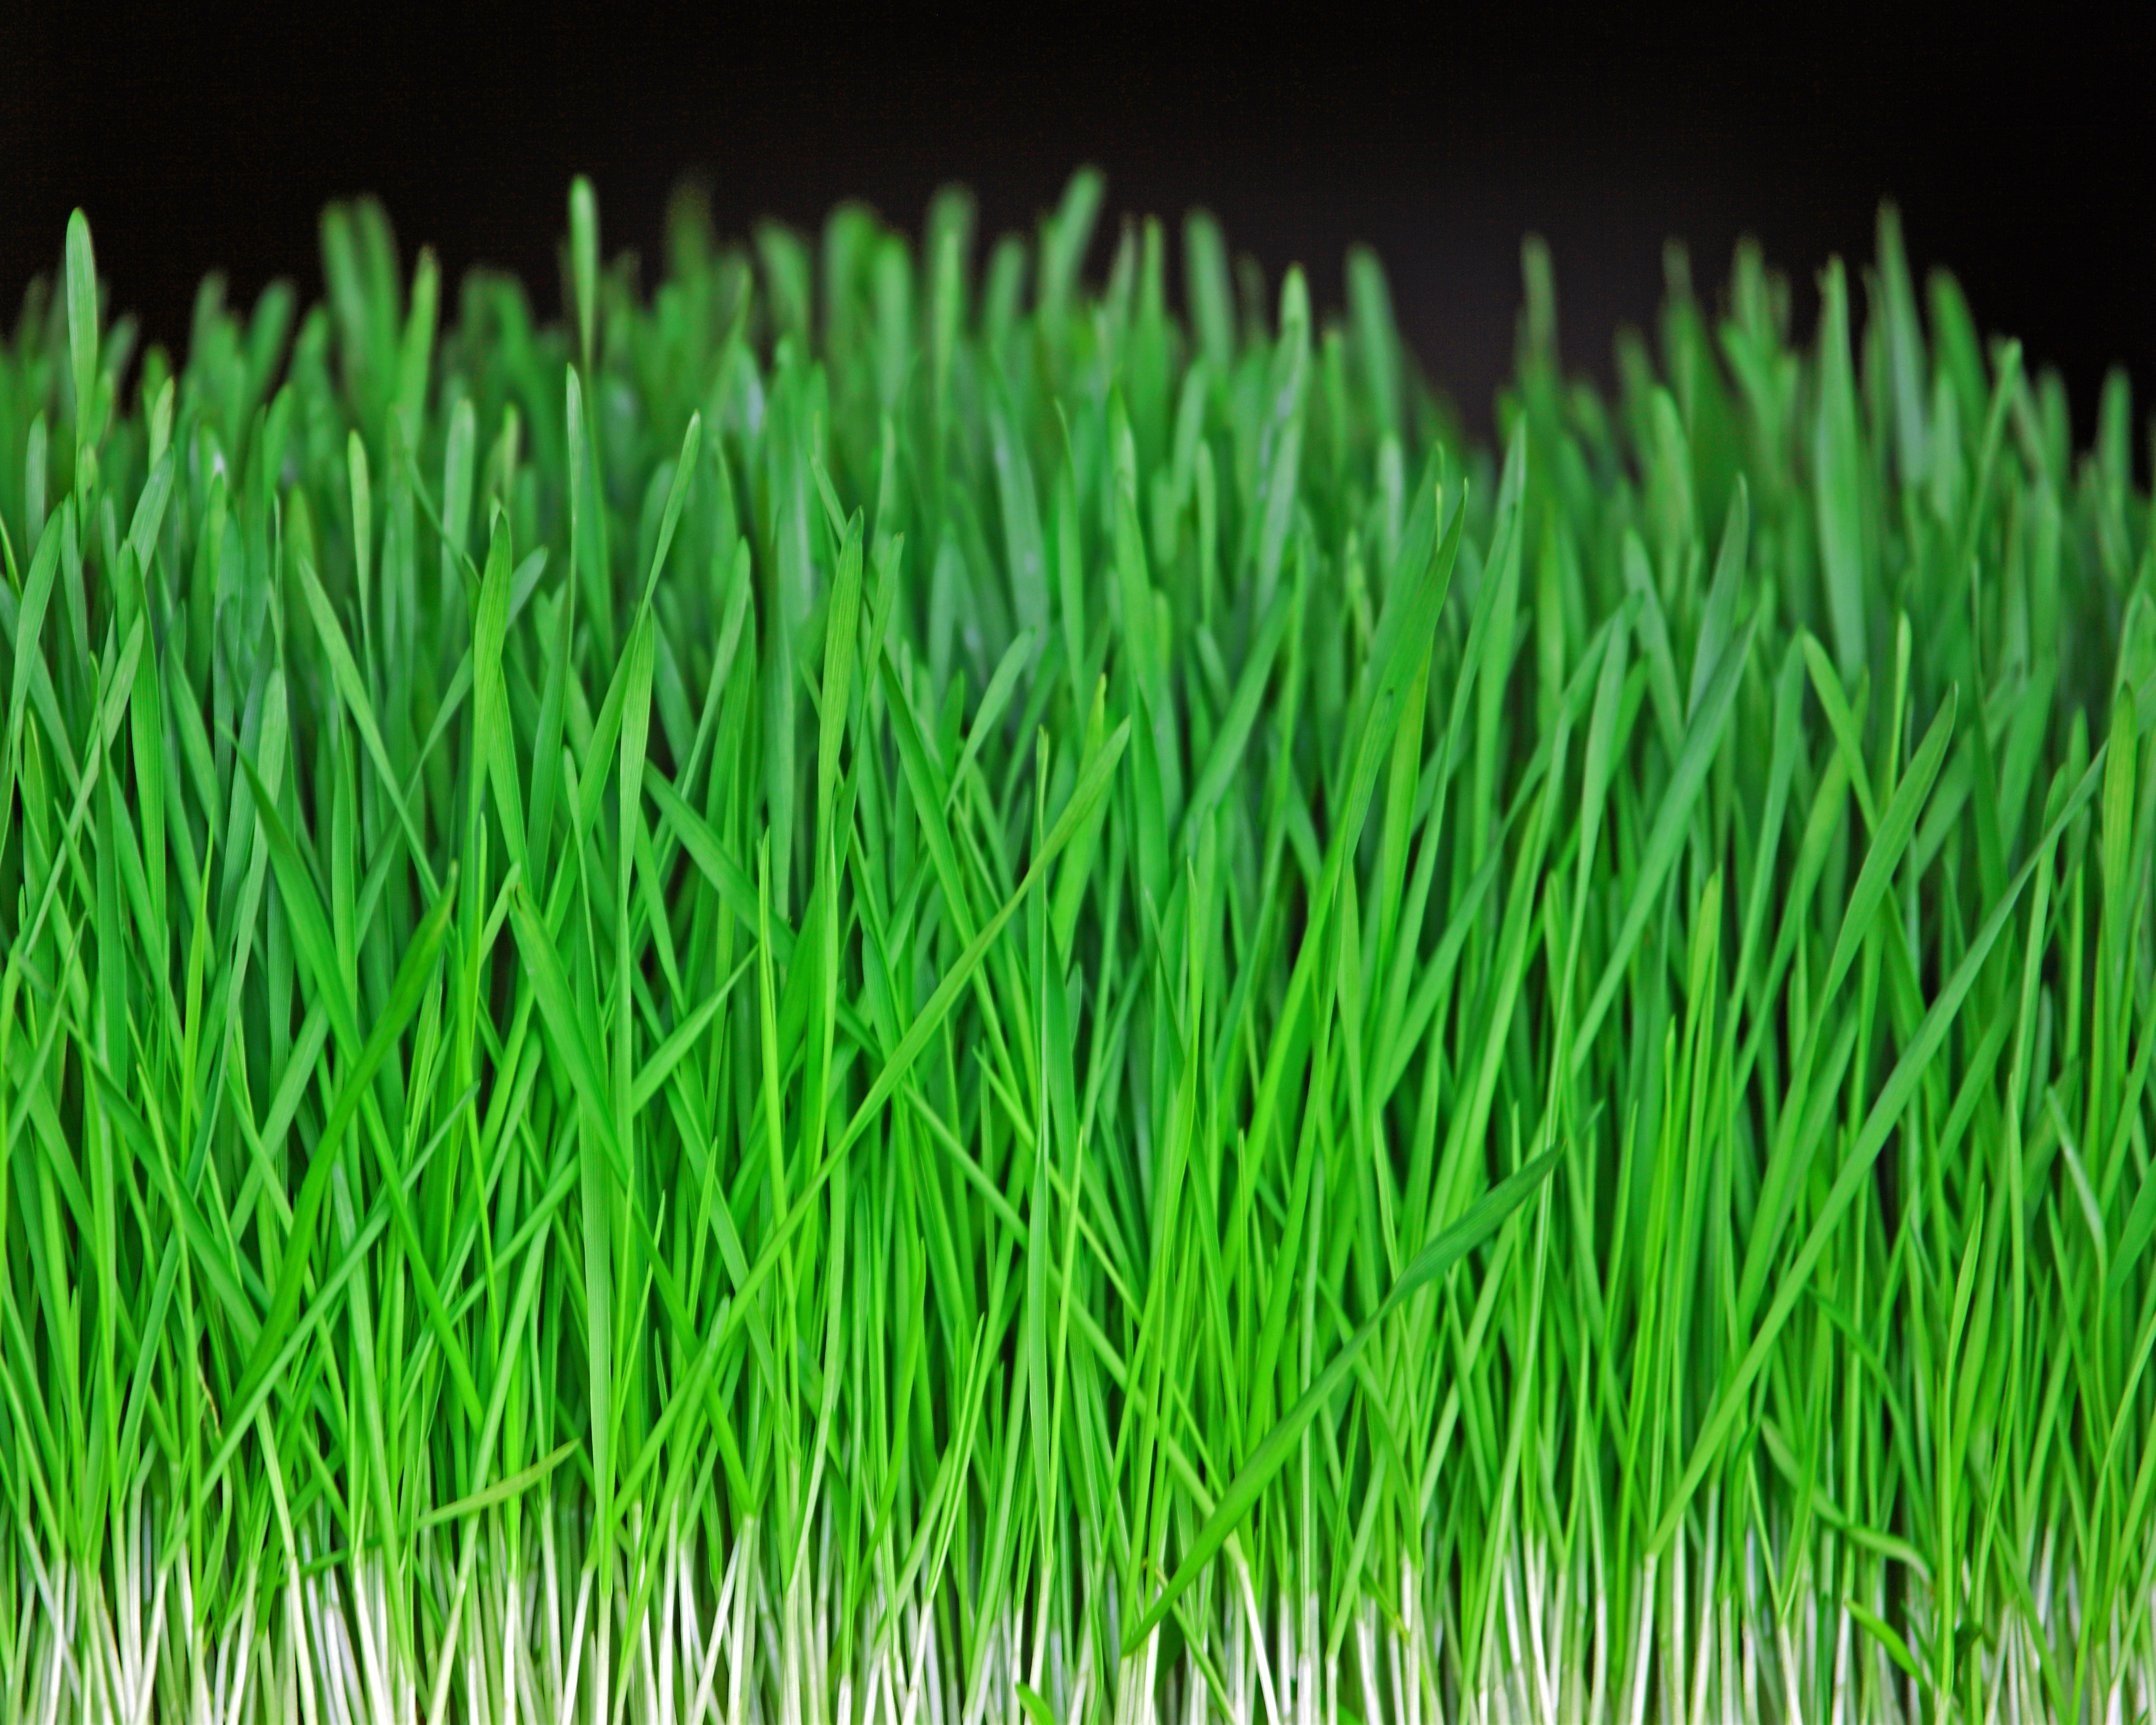 green artificial grass